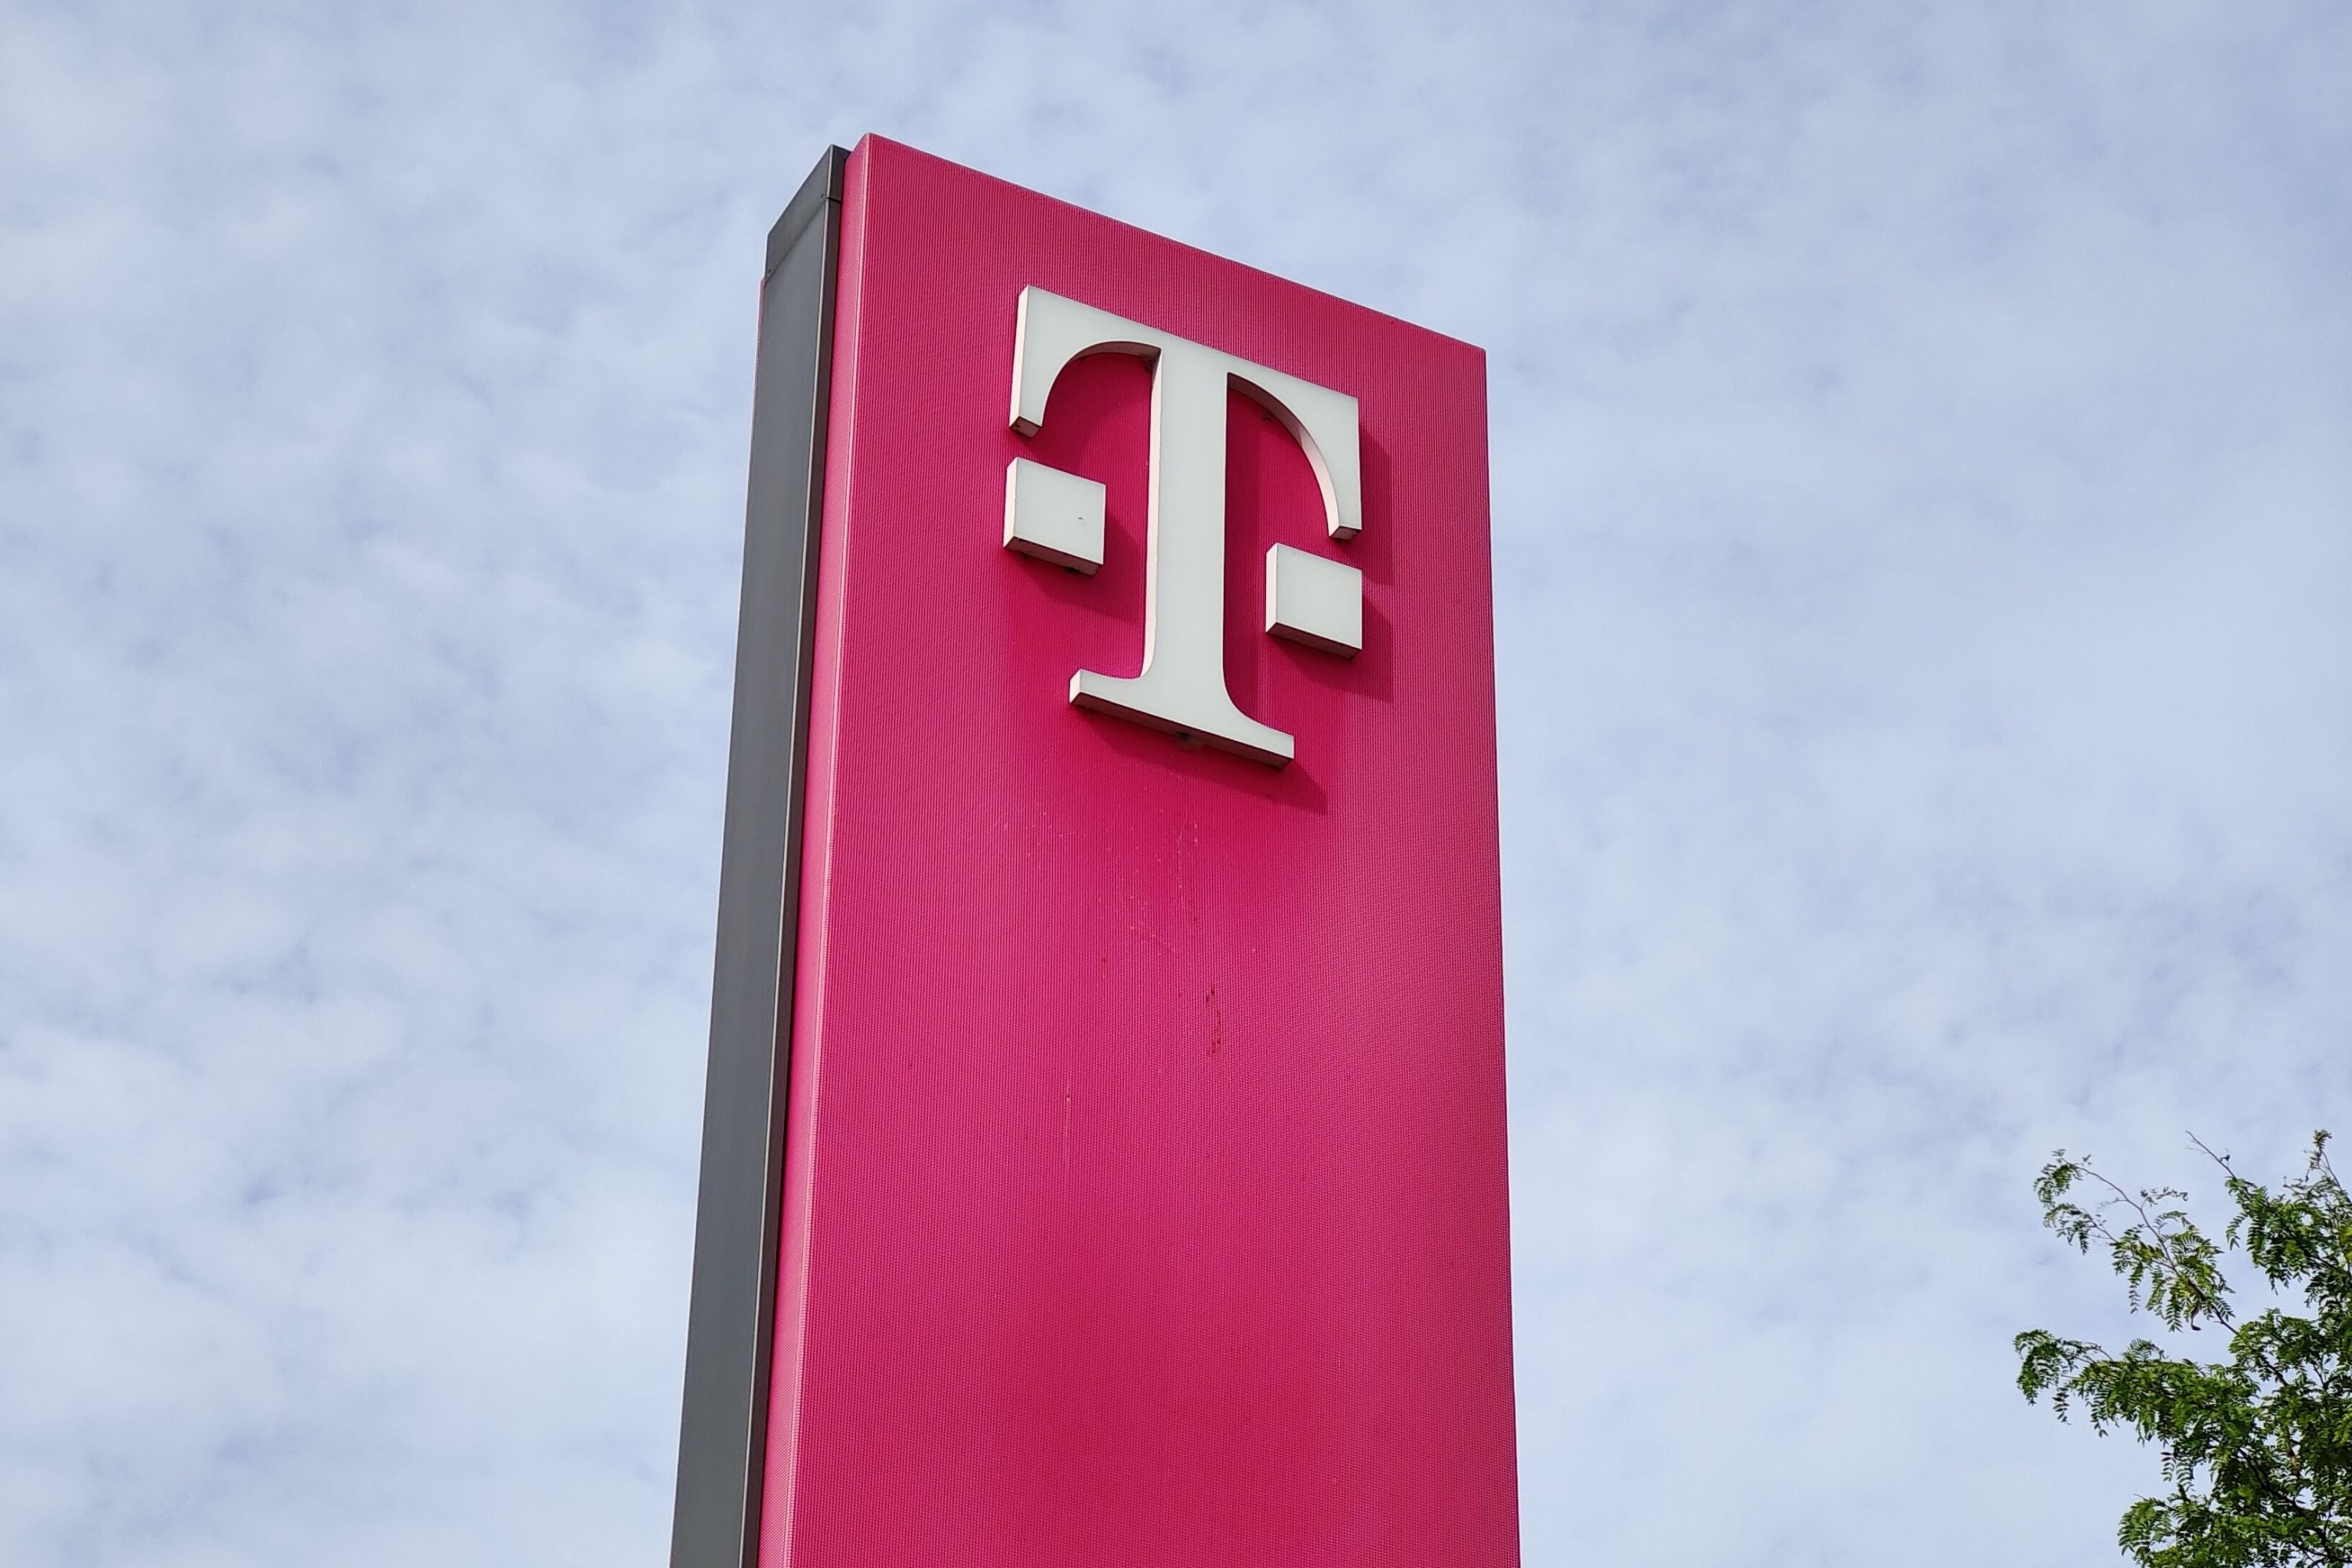 #Daten aus Telefonbuch abgetippt: Telekom geht gegen Wettbewerber vor